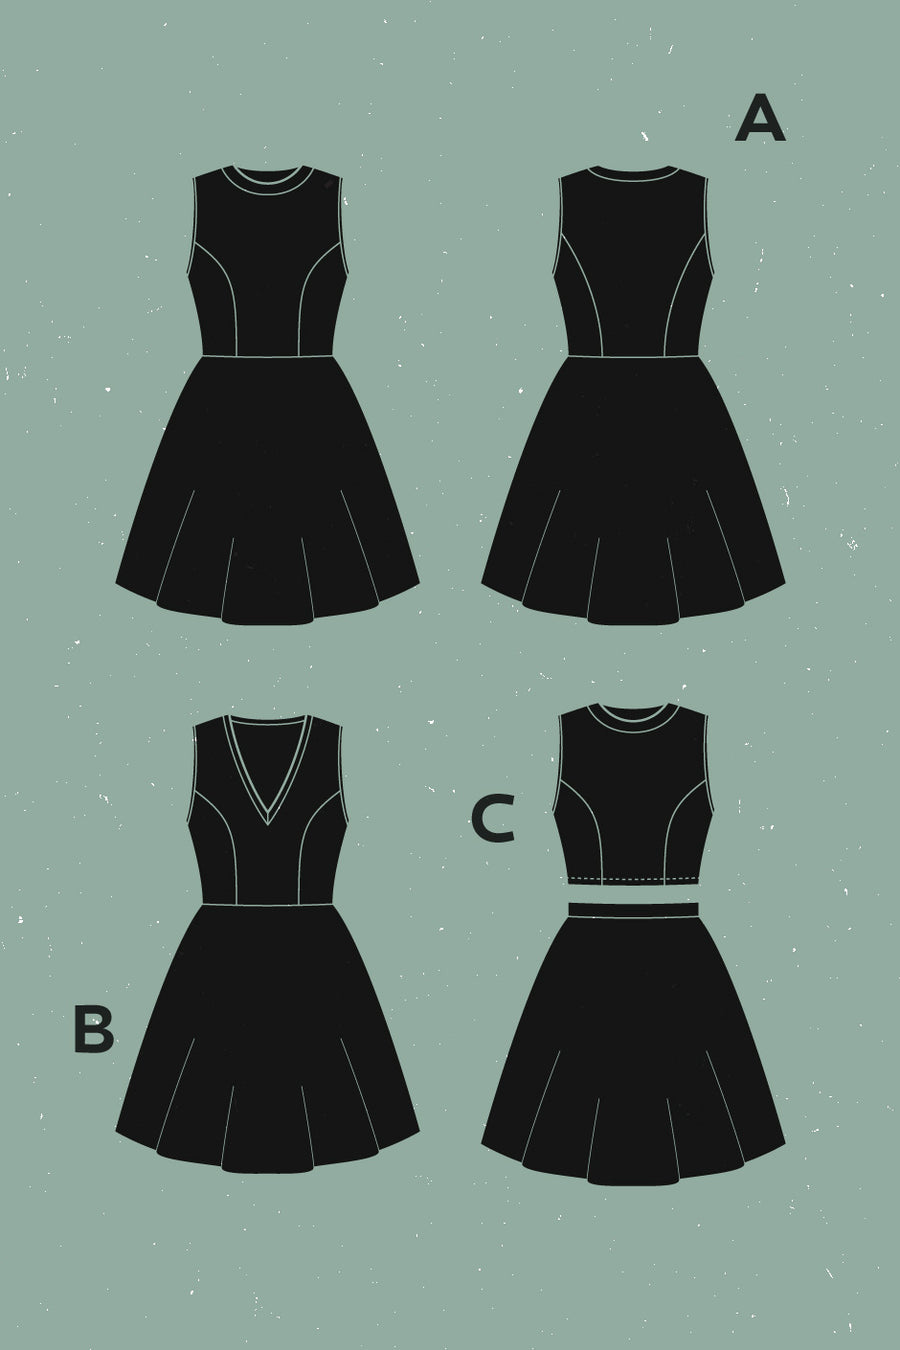 Zéphyr Dress, Top + Skirt Pattern | Patron de Robe, Haut + Jupe Zéphyr | Deer & Doe